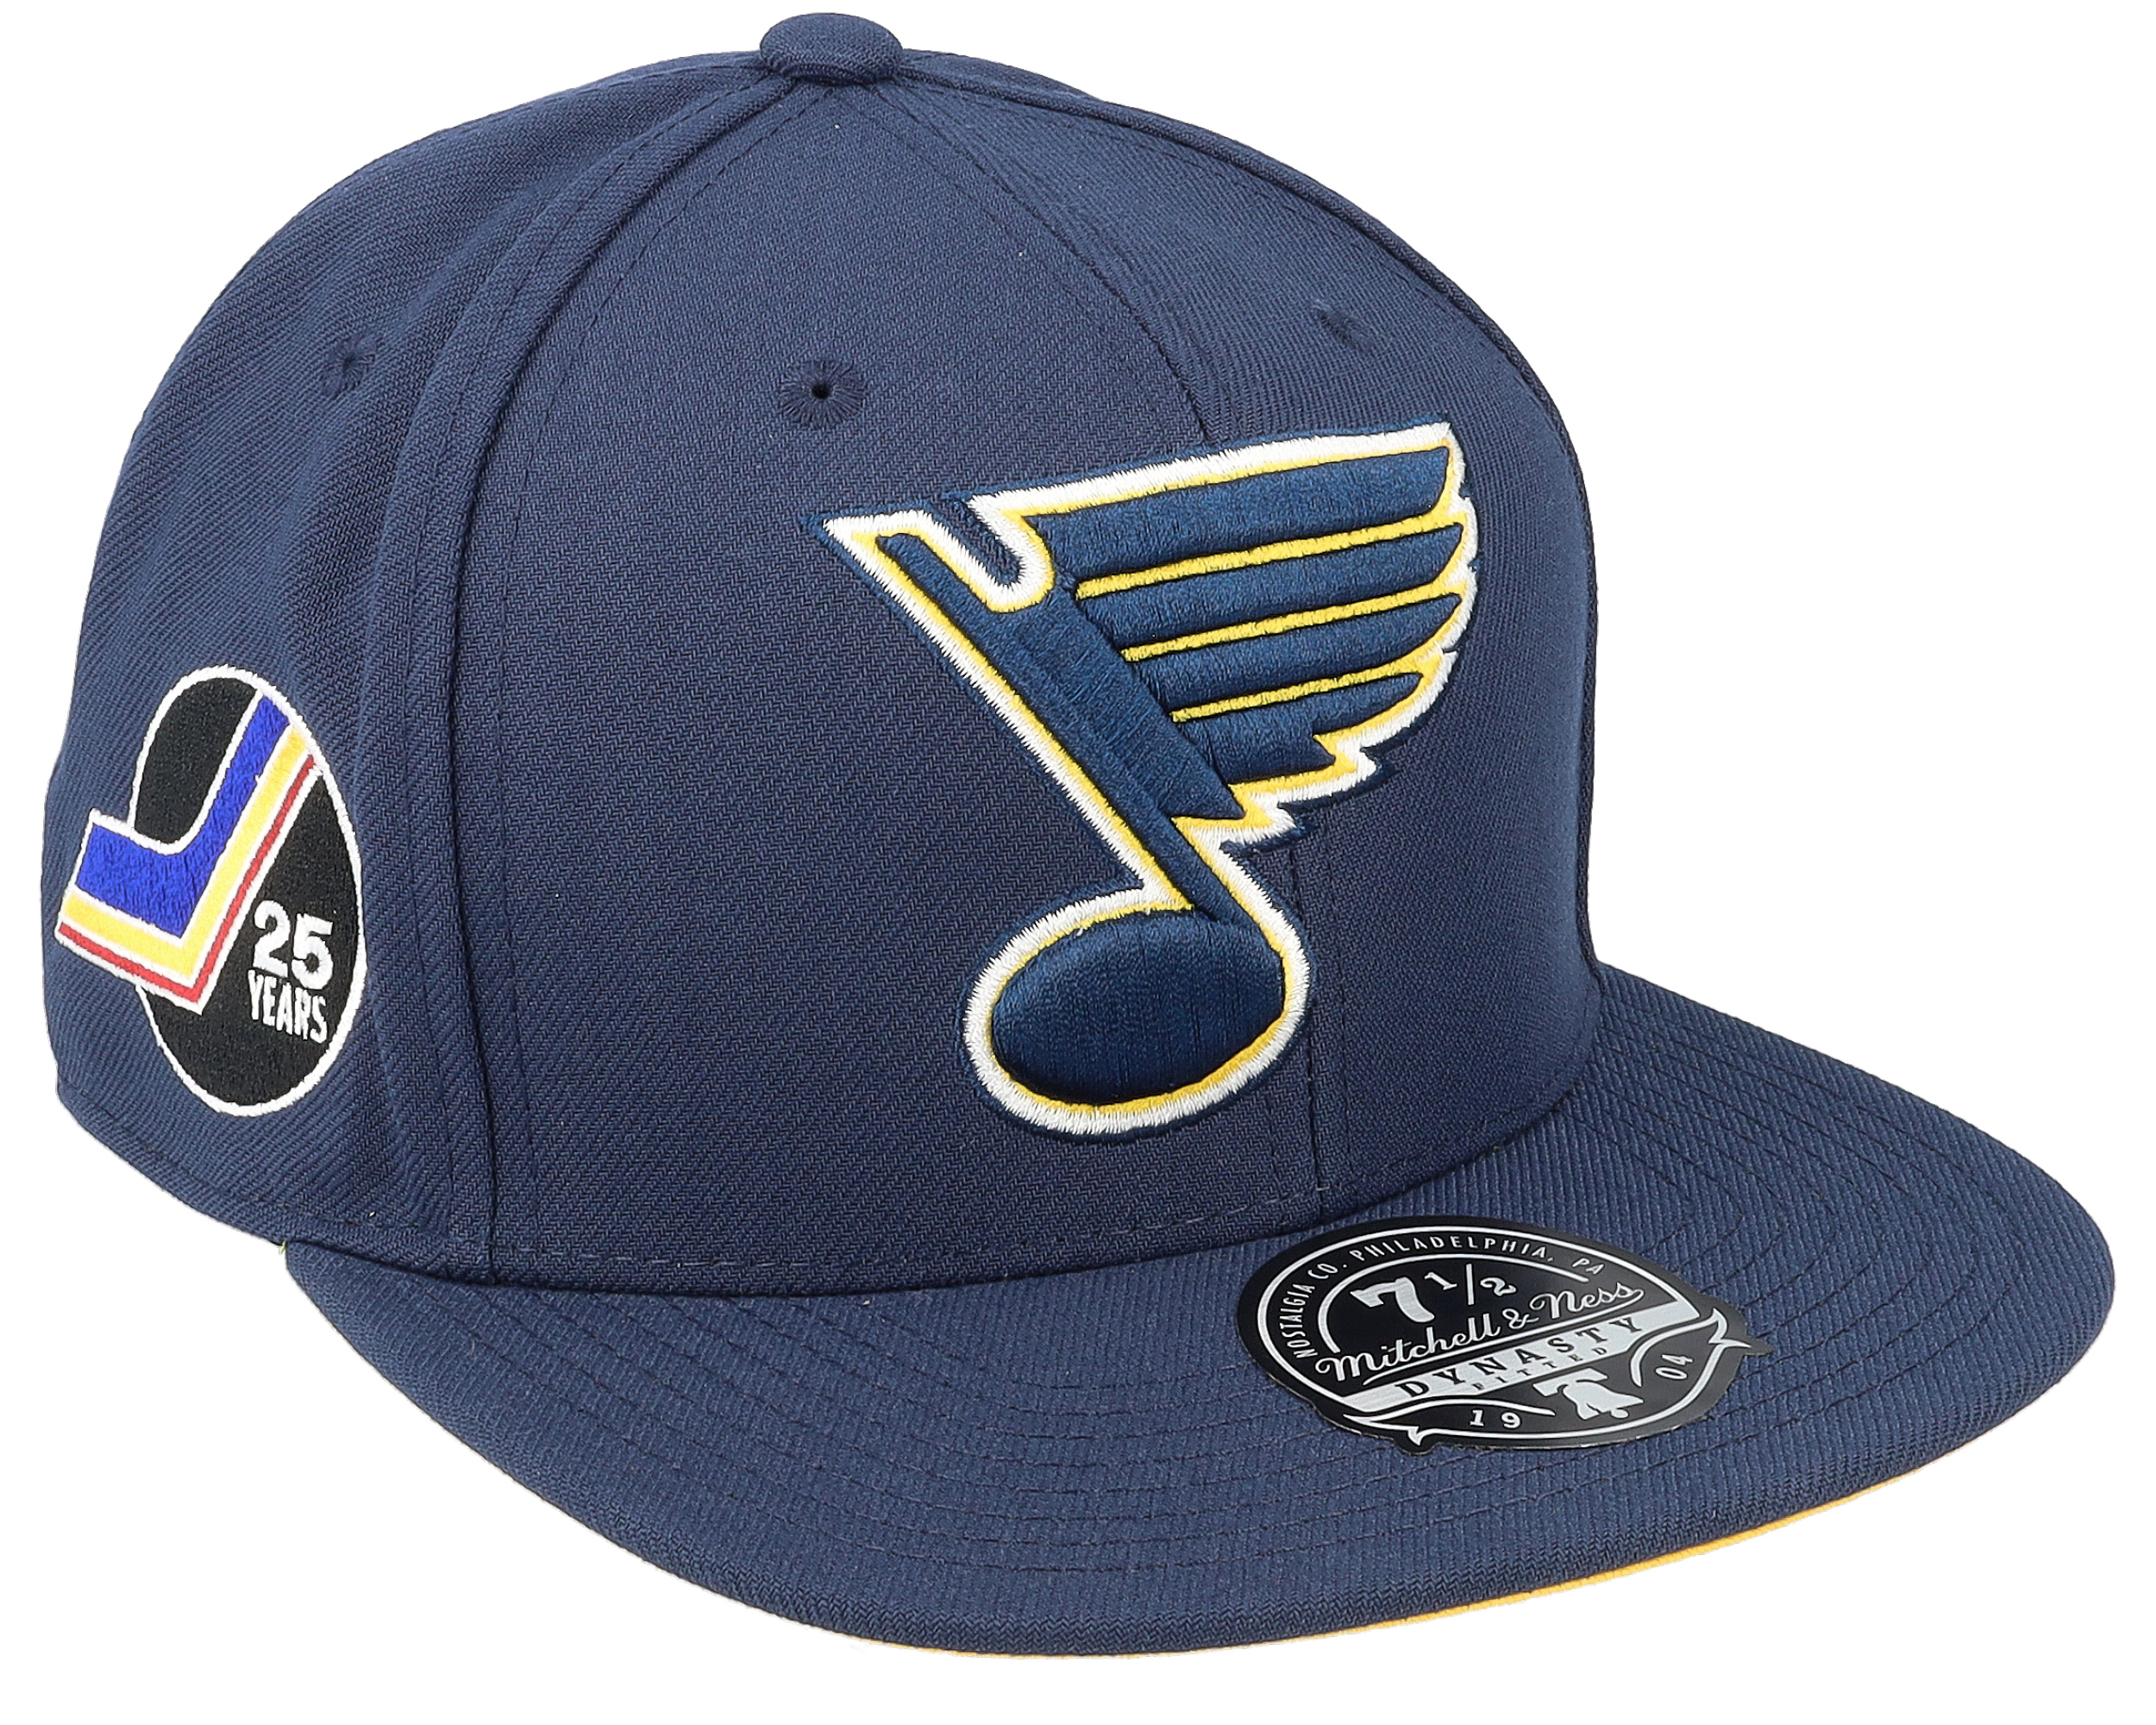 St. Louis Blues Kids Adjustable Hats, Blues Adjustable Caps